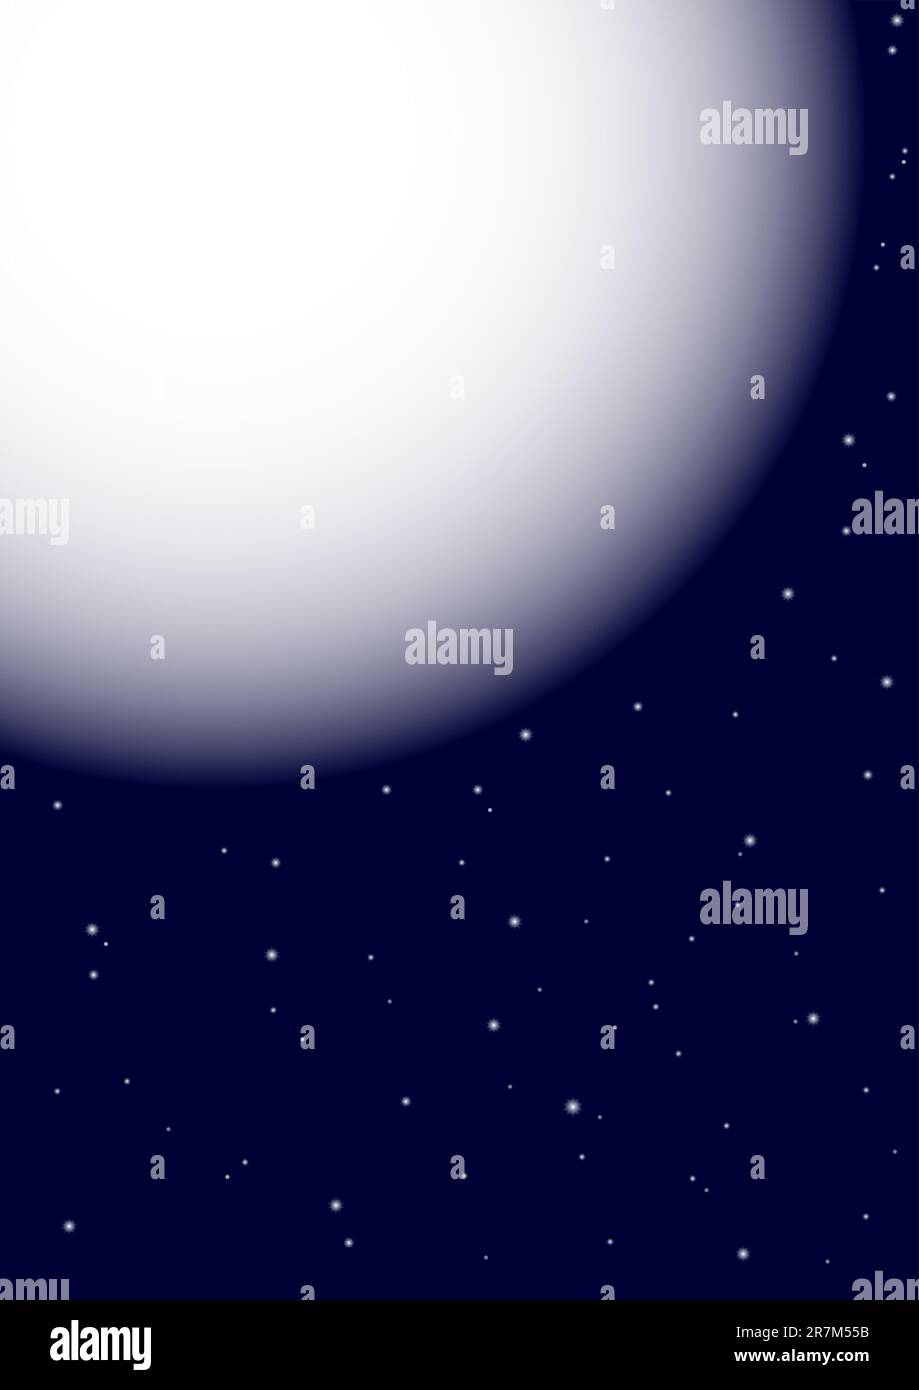 Sfondo astratto - pianeta e stelle su sfondo blu scuro Illustrazione Vettoriale